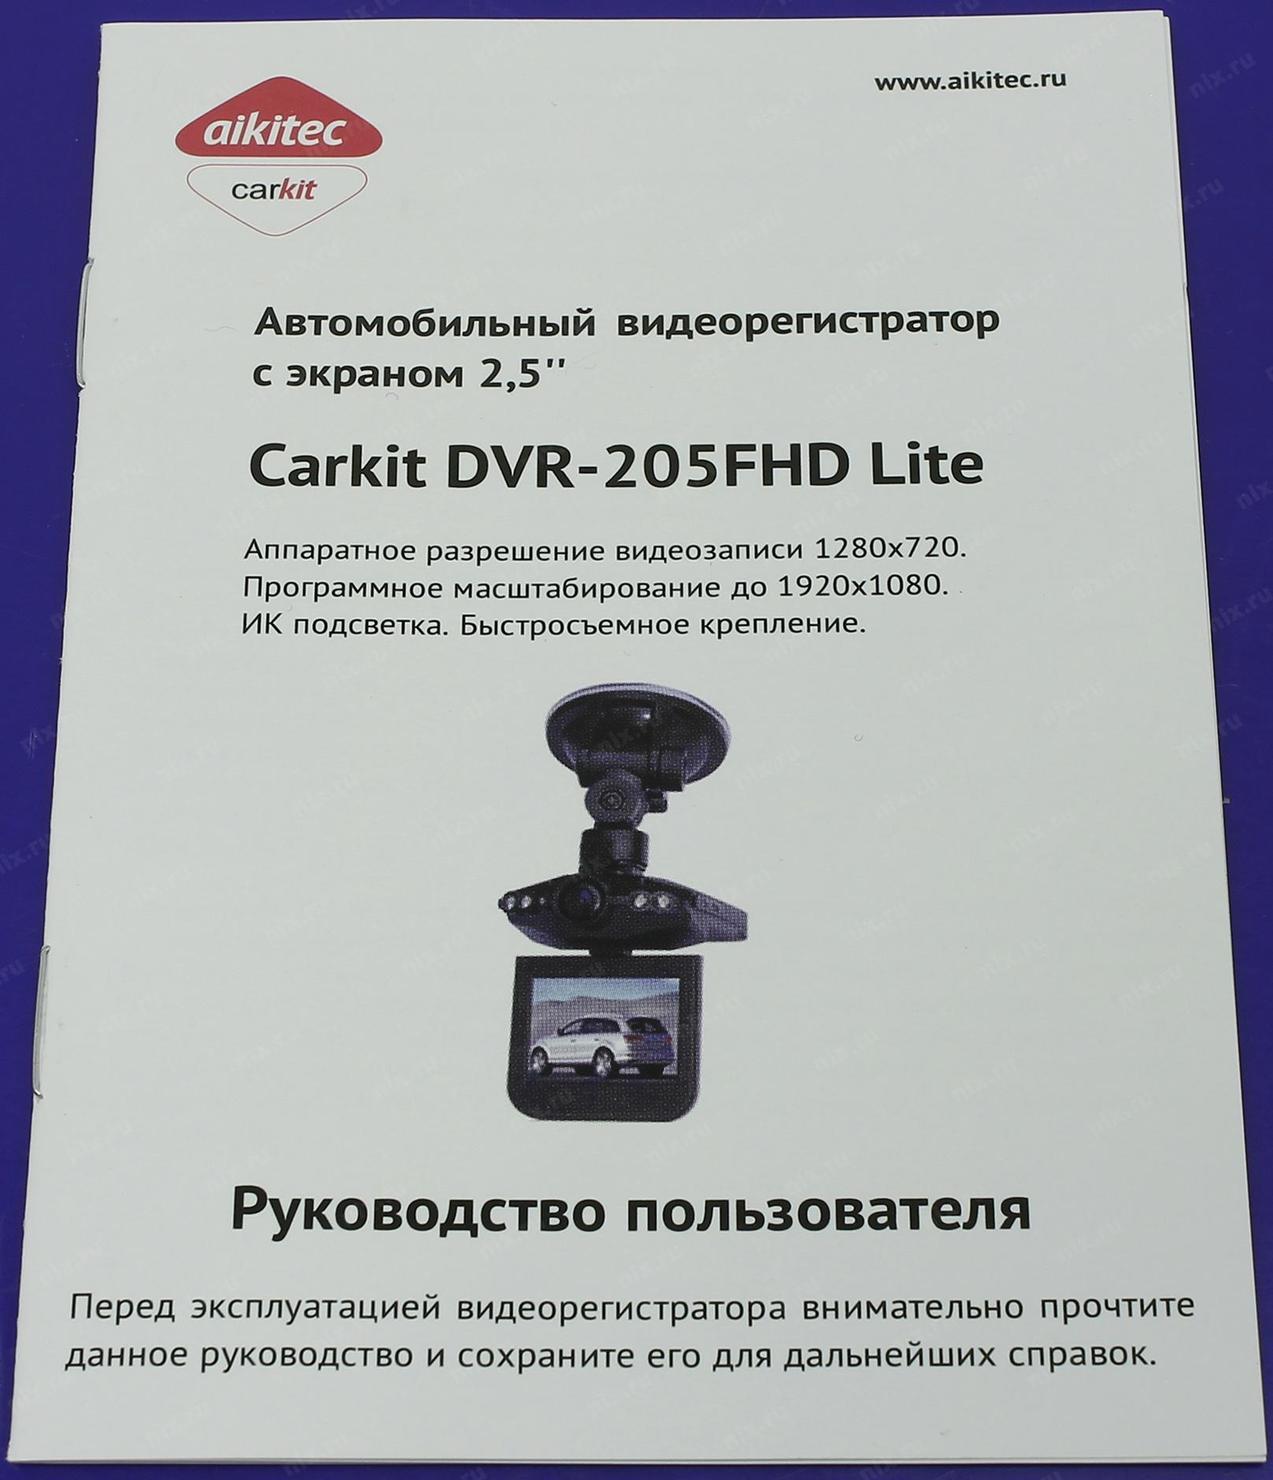 Видеорегистратор Aikitec CARKIT DVR-205fhd Lite